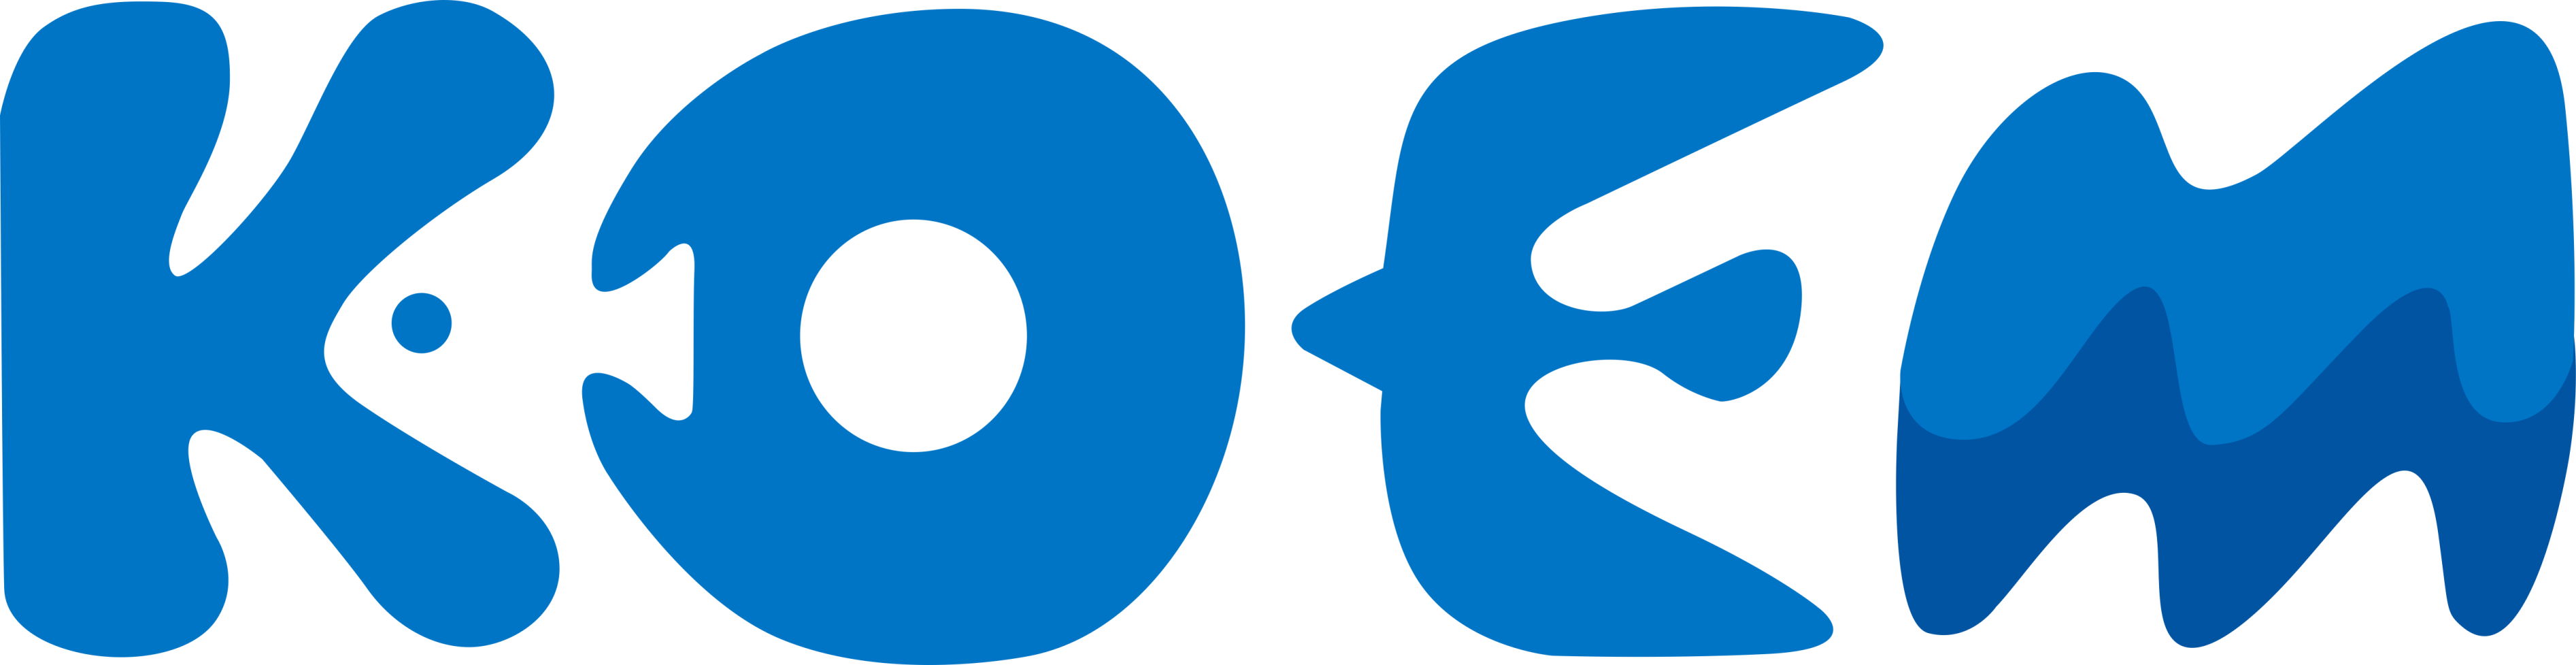 KOEM logo